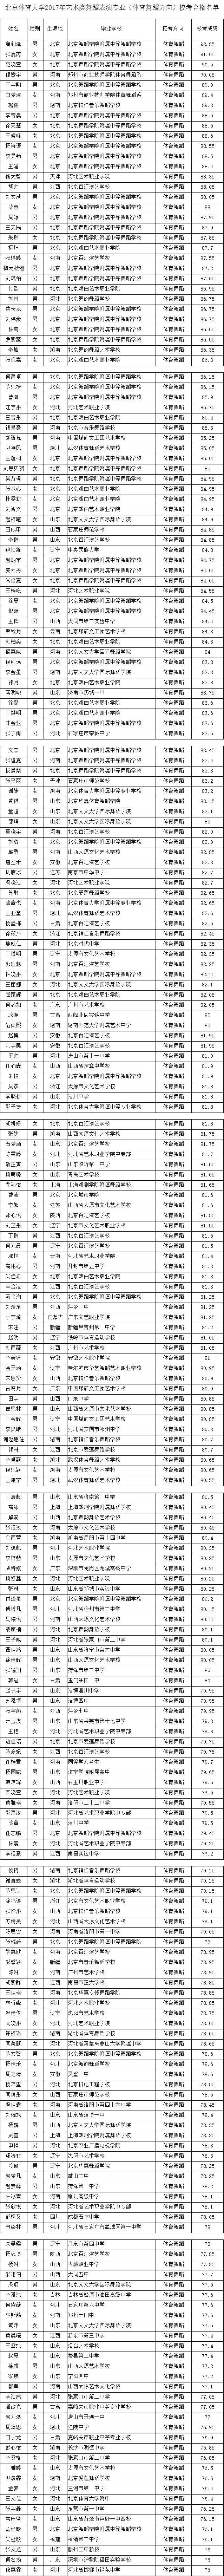 2017年北京体育大学舞蹈表演(体育舞蹈方向)校考合格名单.jpg